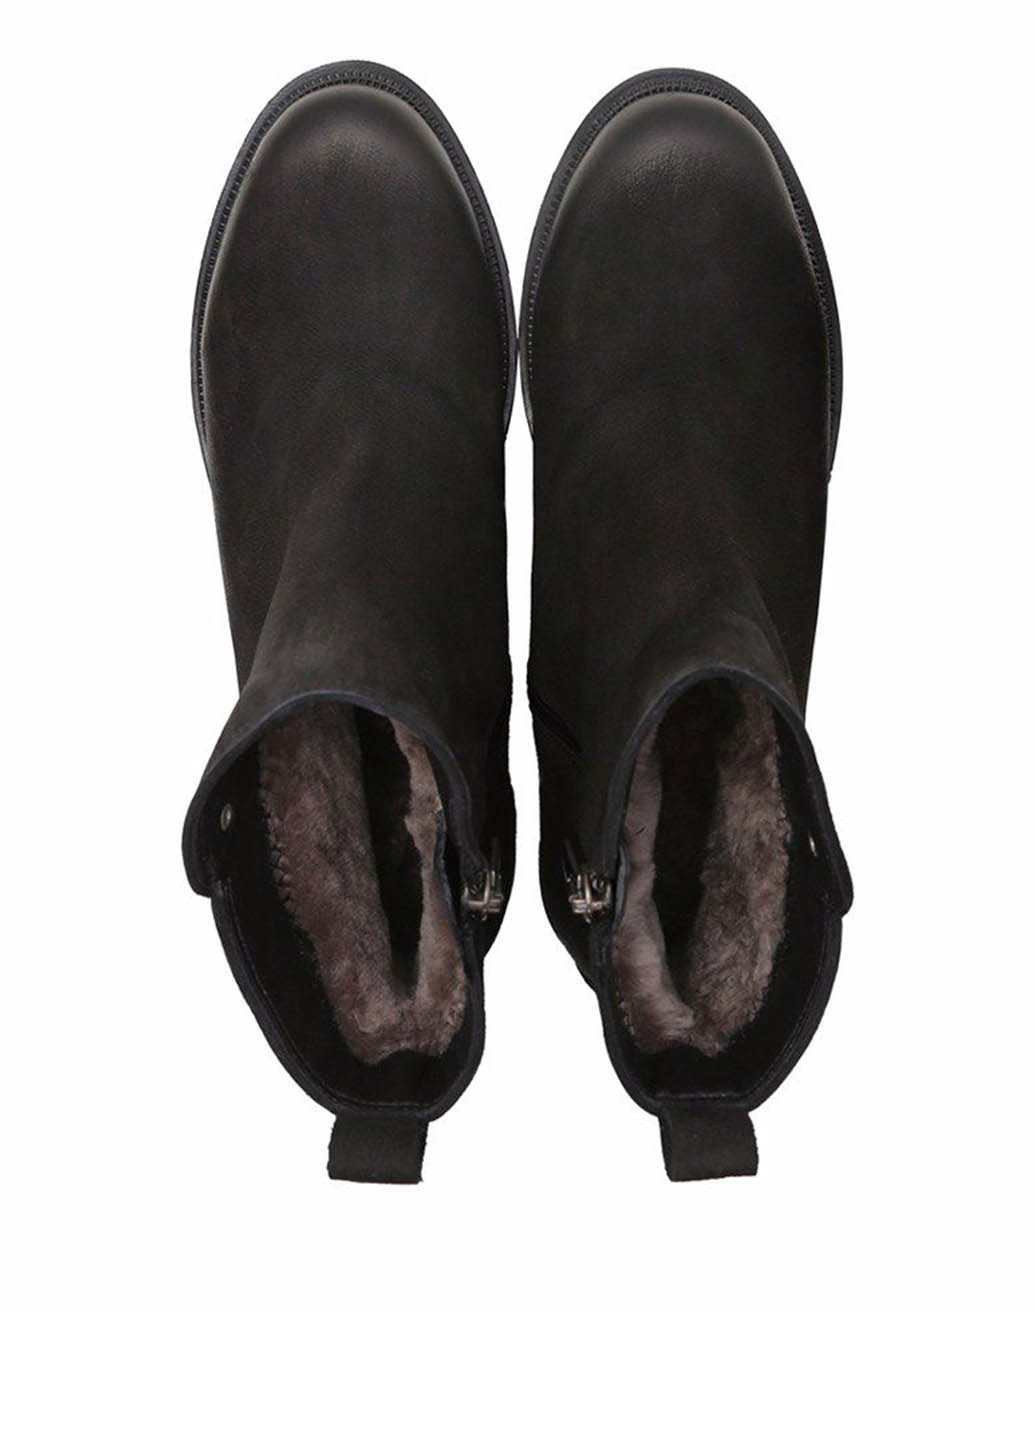 Зимние ботинки челси Prego с металлическими вставками из натурального нубука